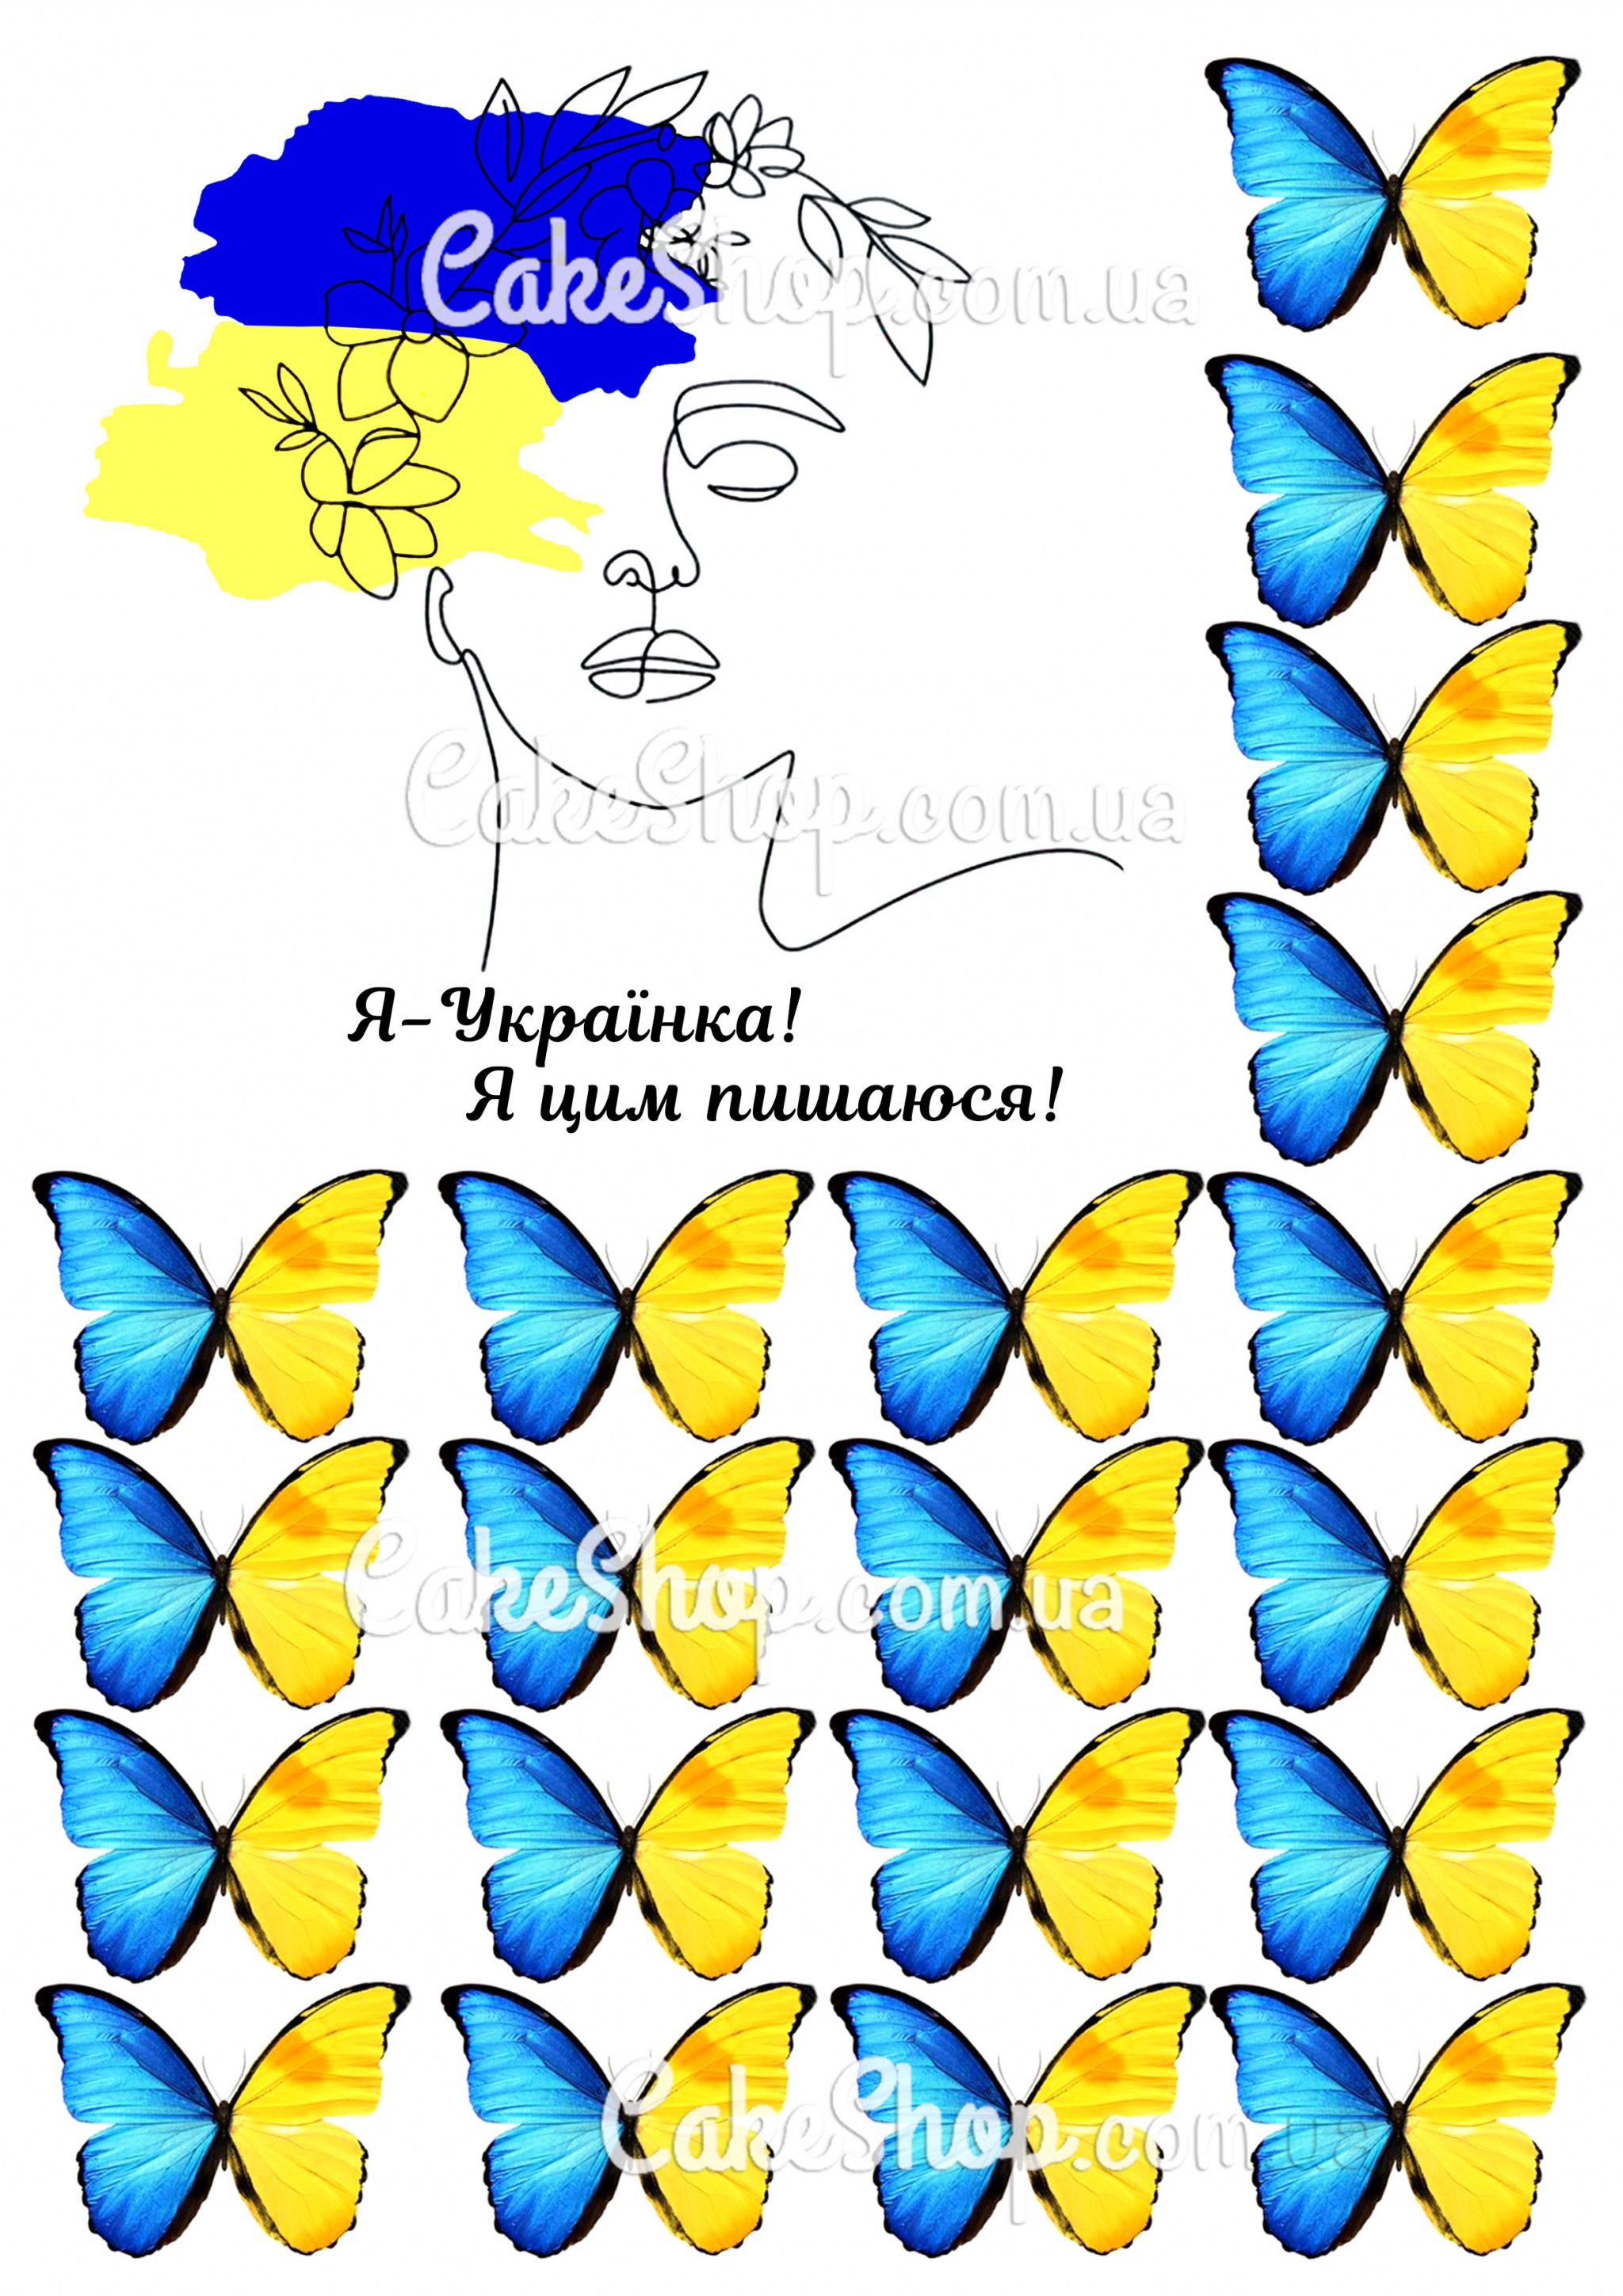 ⋗ Вафельная картинка Я-Українка! купить в Украине ➛ CakeShop.com.ua, фото